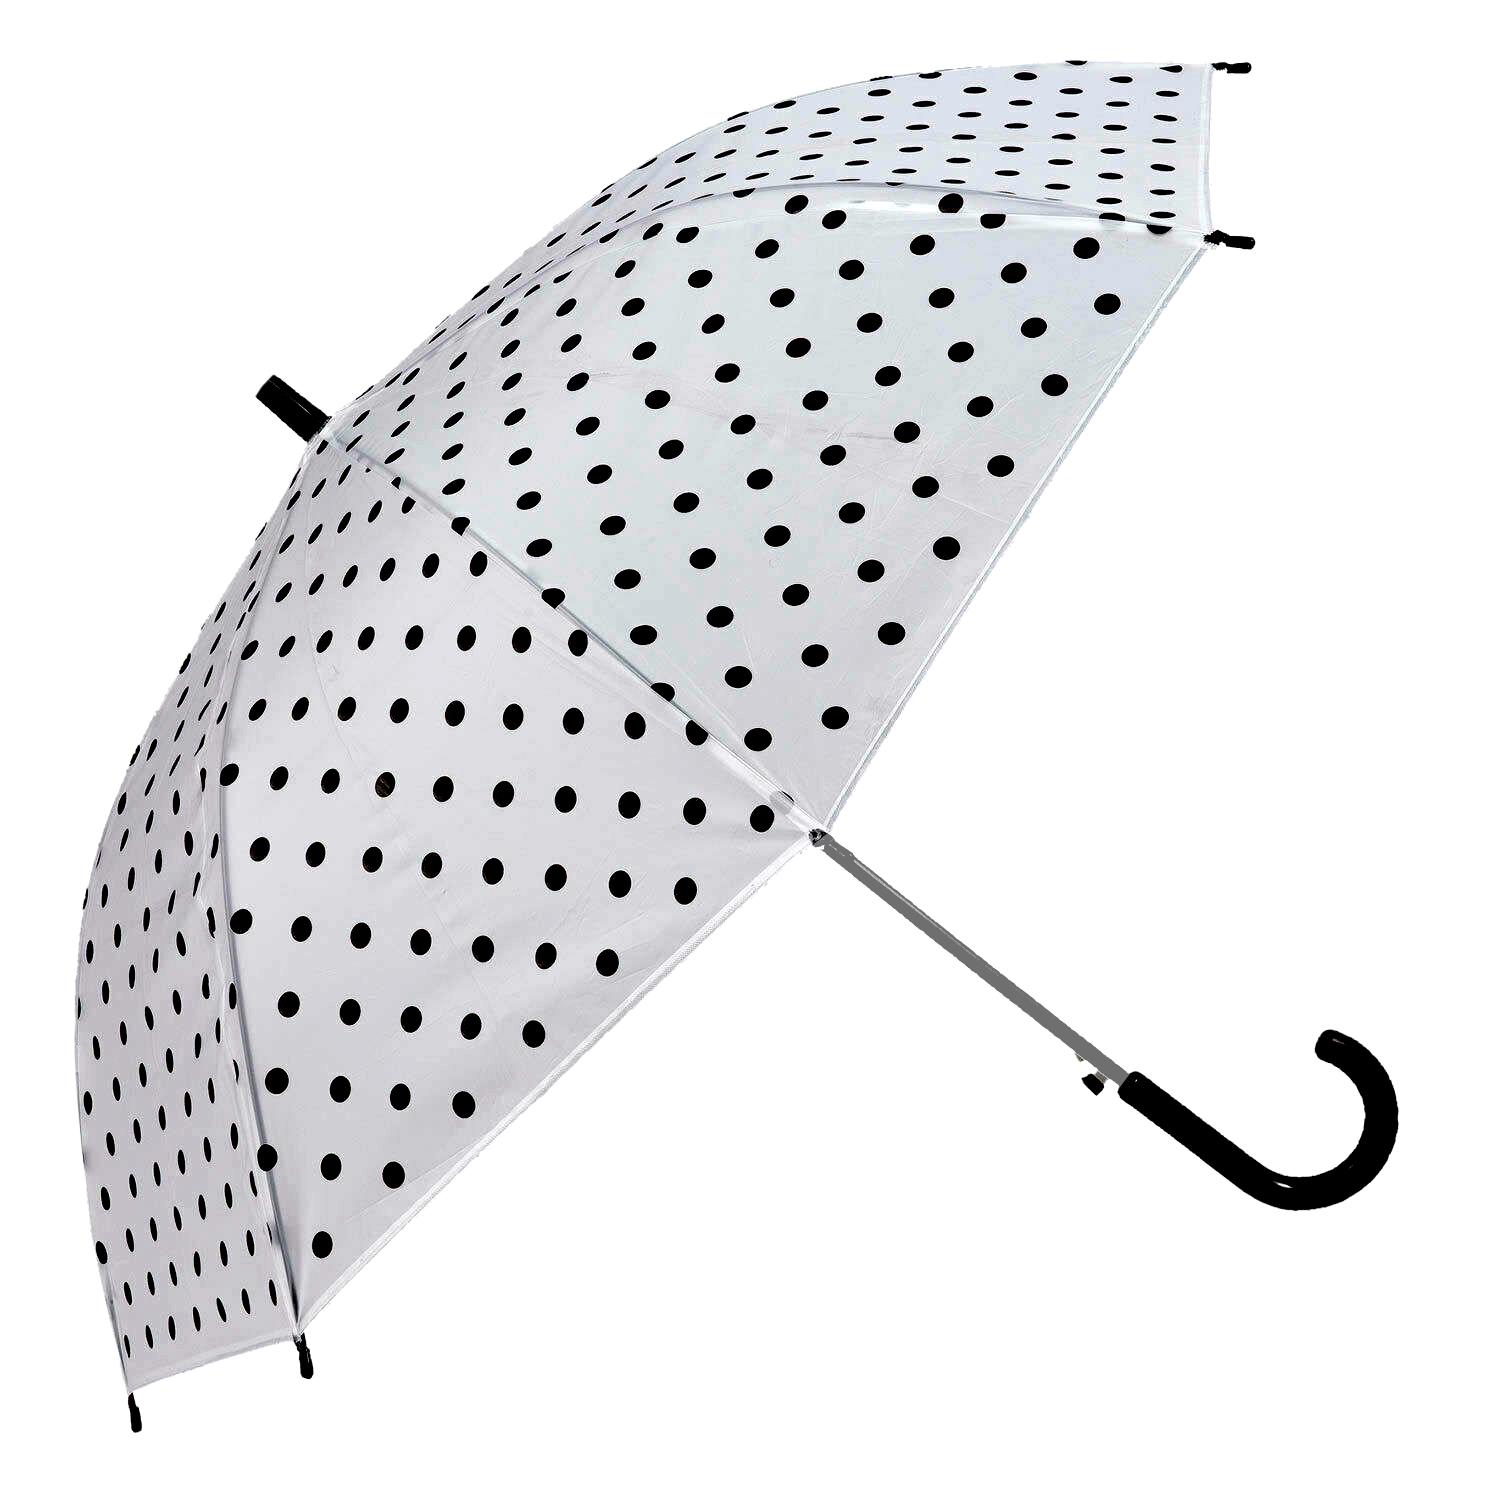 Regenschirm weiß mit schwarzen Punkten, Durchmesser ca. 80 cm